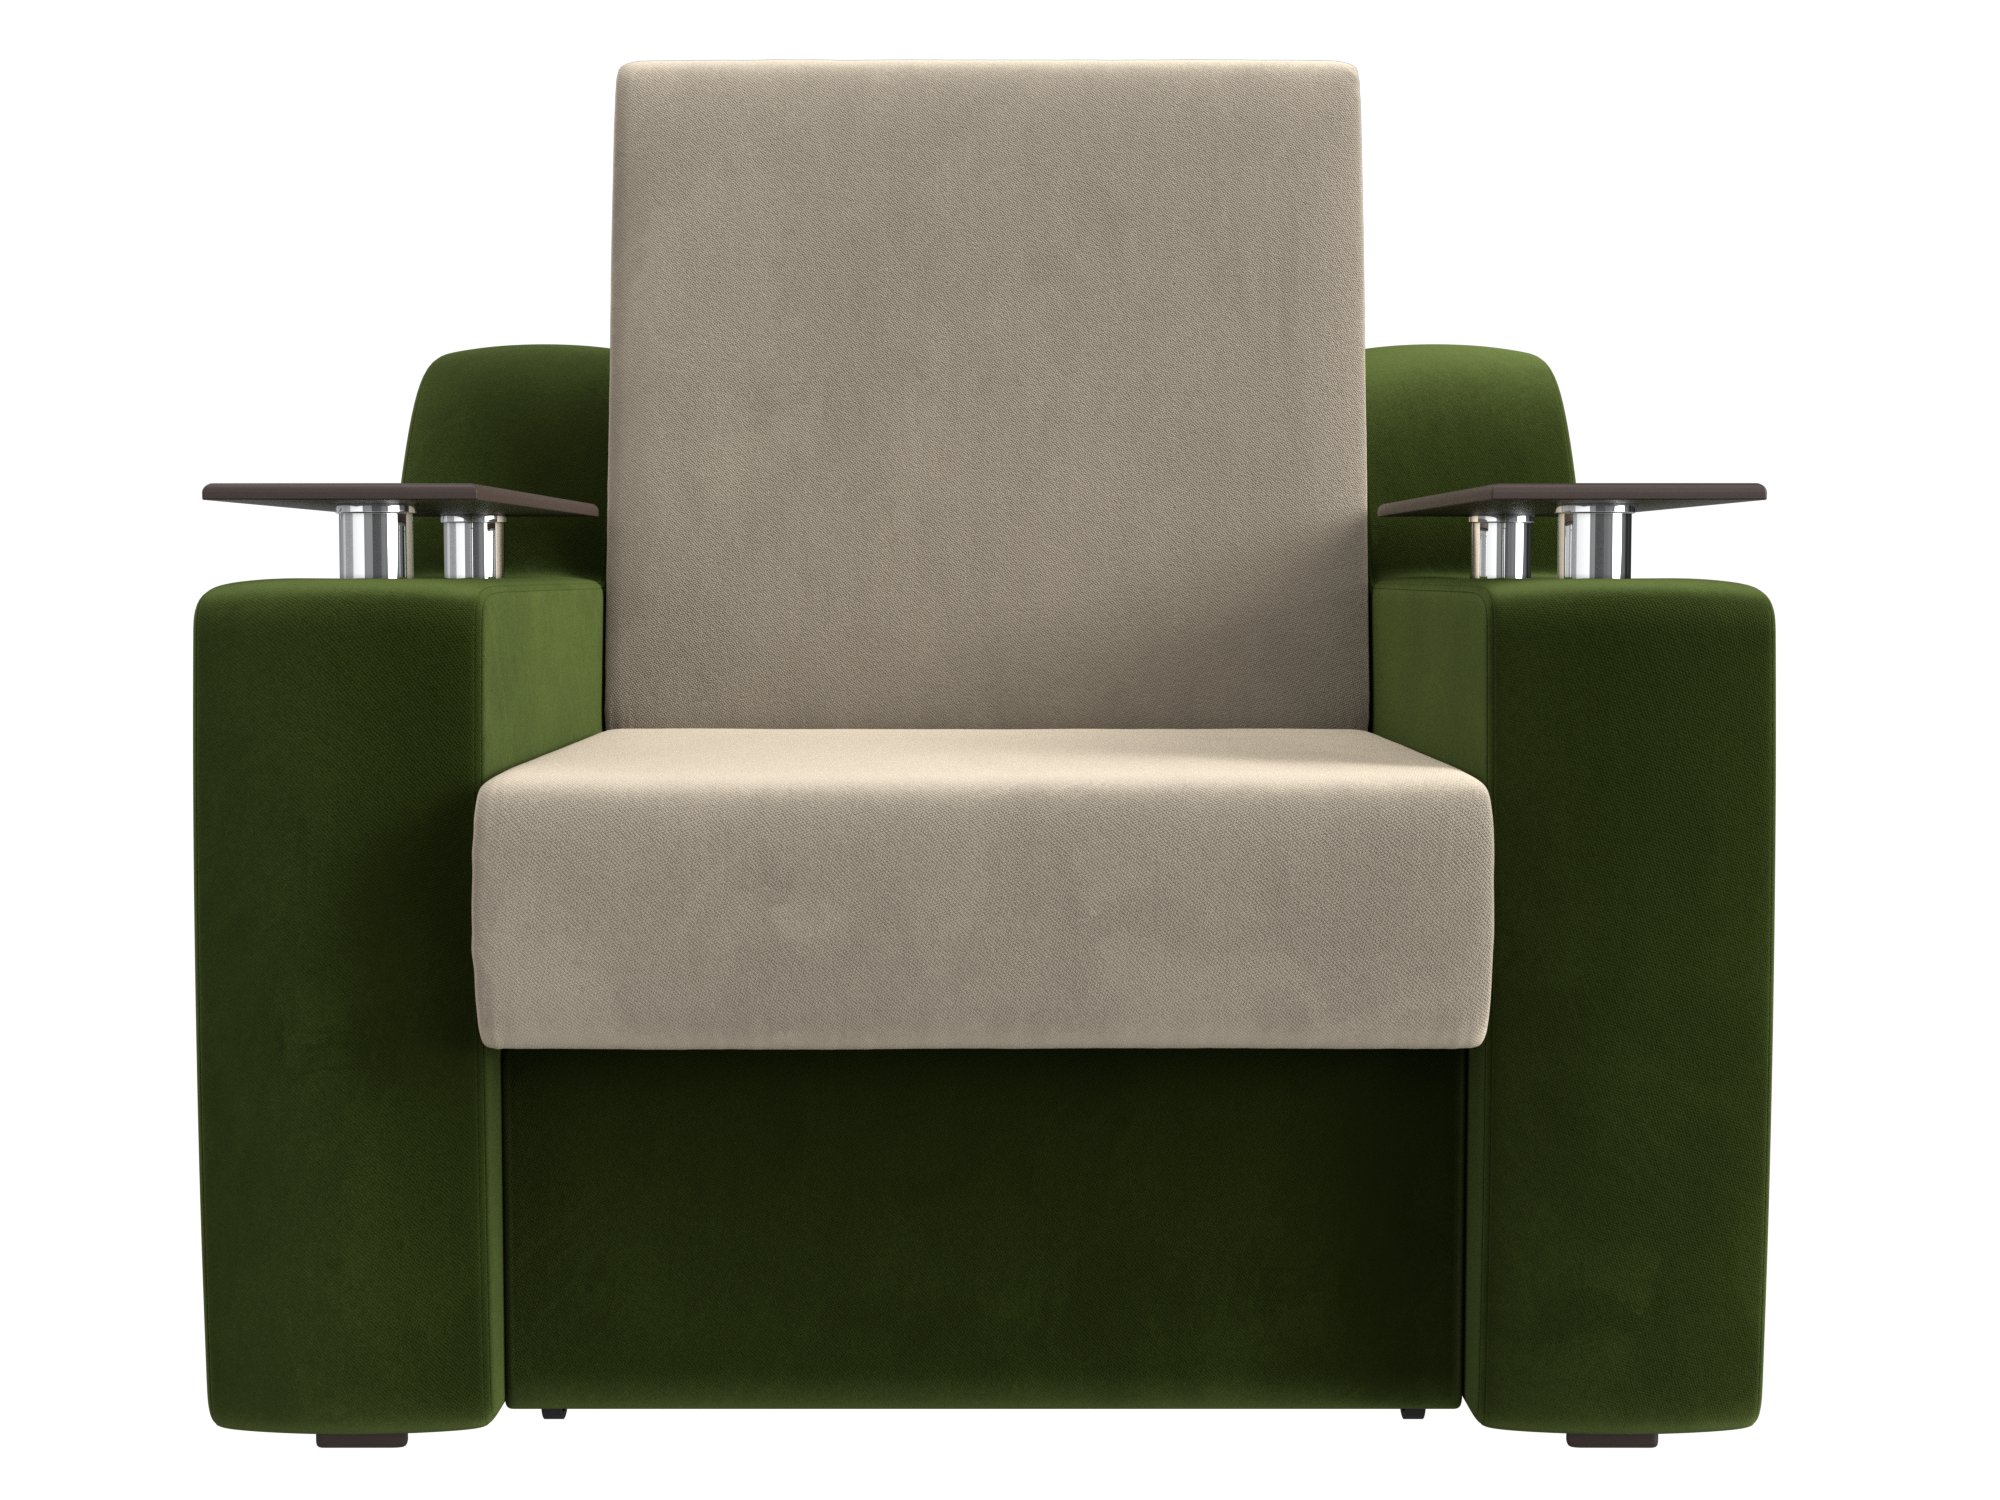 Кресло-кровать Сенатор (60х190) MebelVia Бежевый, Зеленый, Микровельвет, ДСП, ЛДСП, Брус кресло мини зеленый фанера